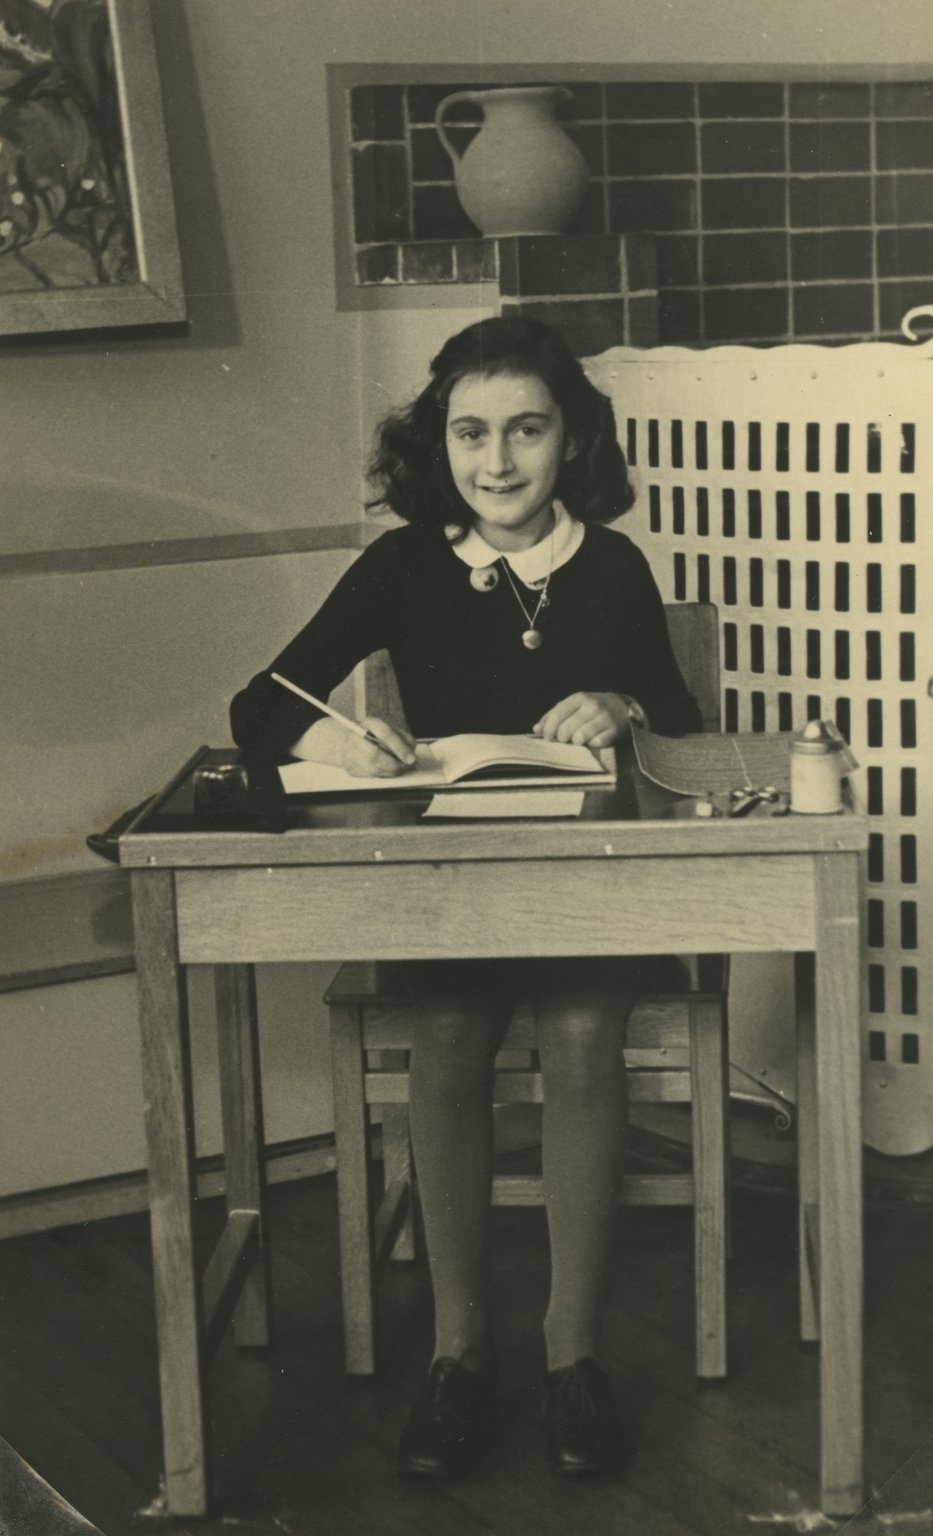 auteur Anne Frank de la citation Au fond, je sais que je ne pourrais plus jamais être aussi innocent, même si j'aimerais être.